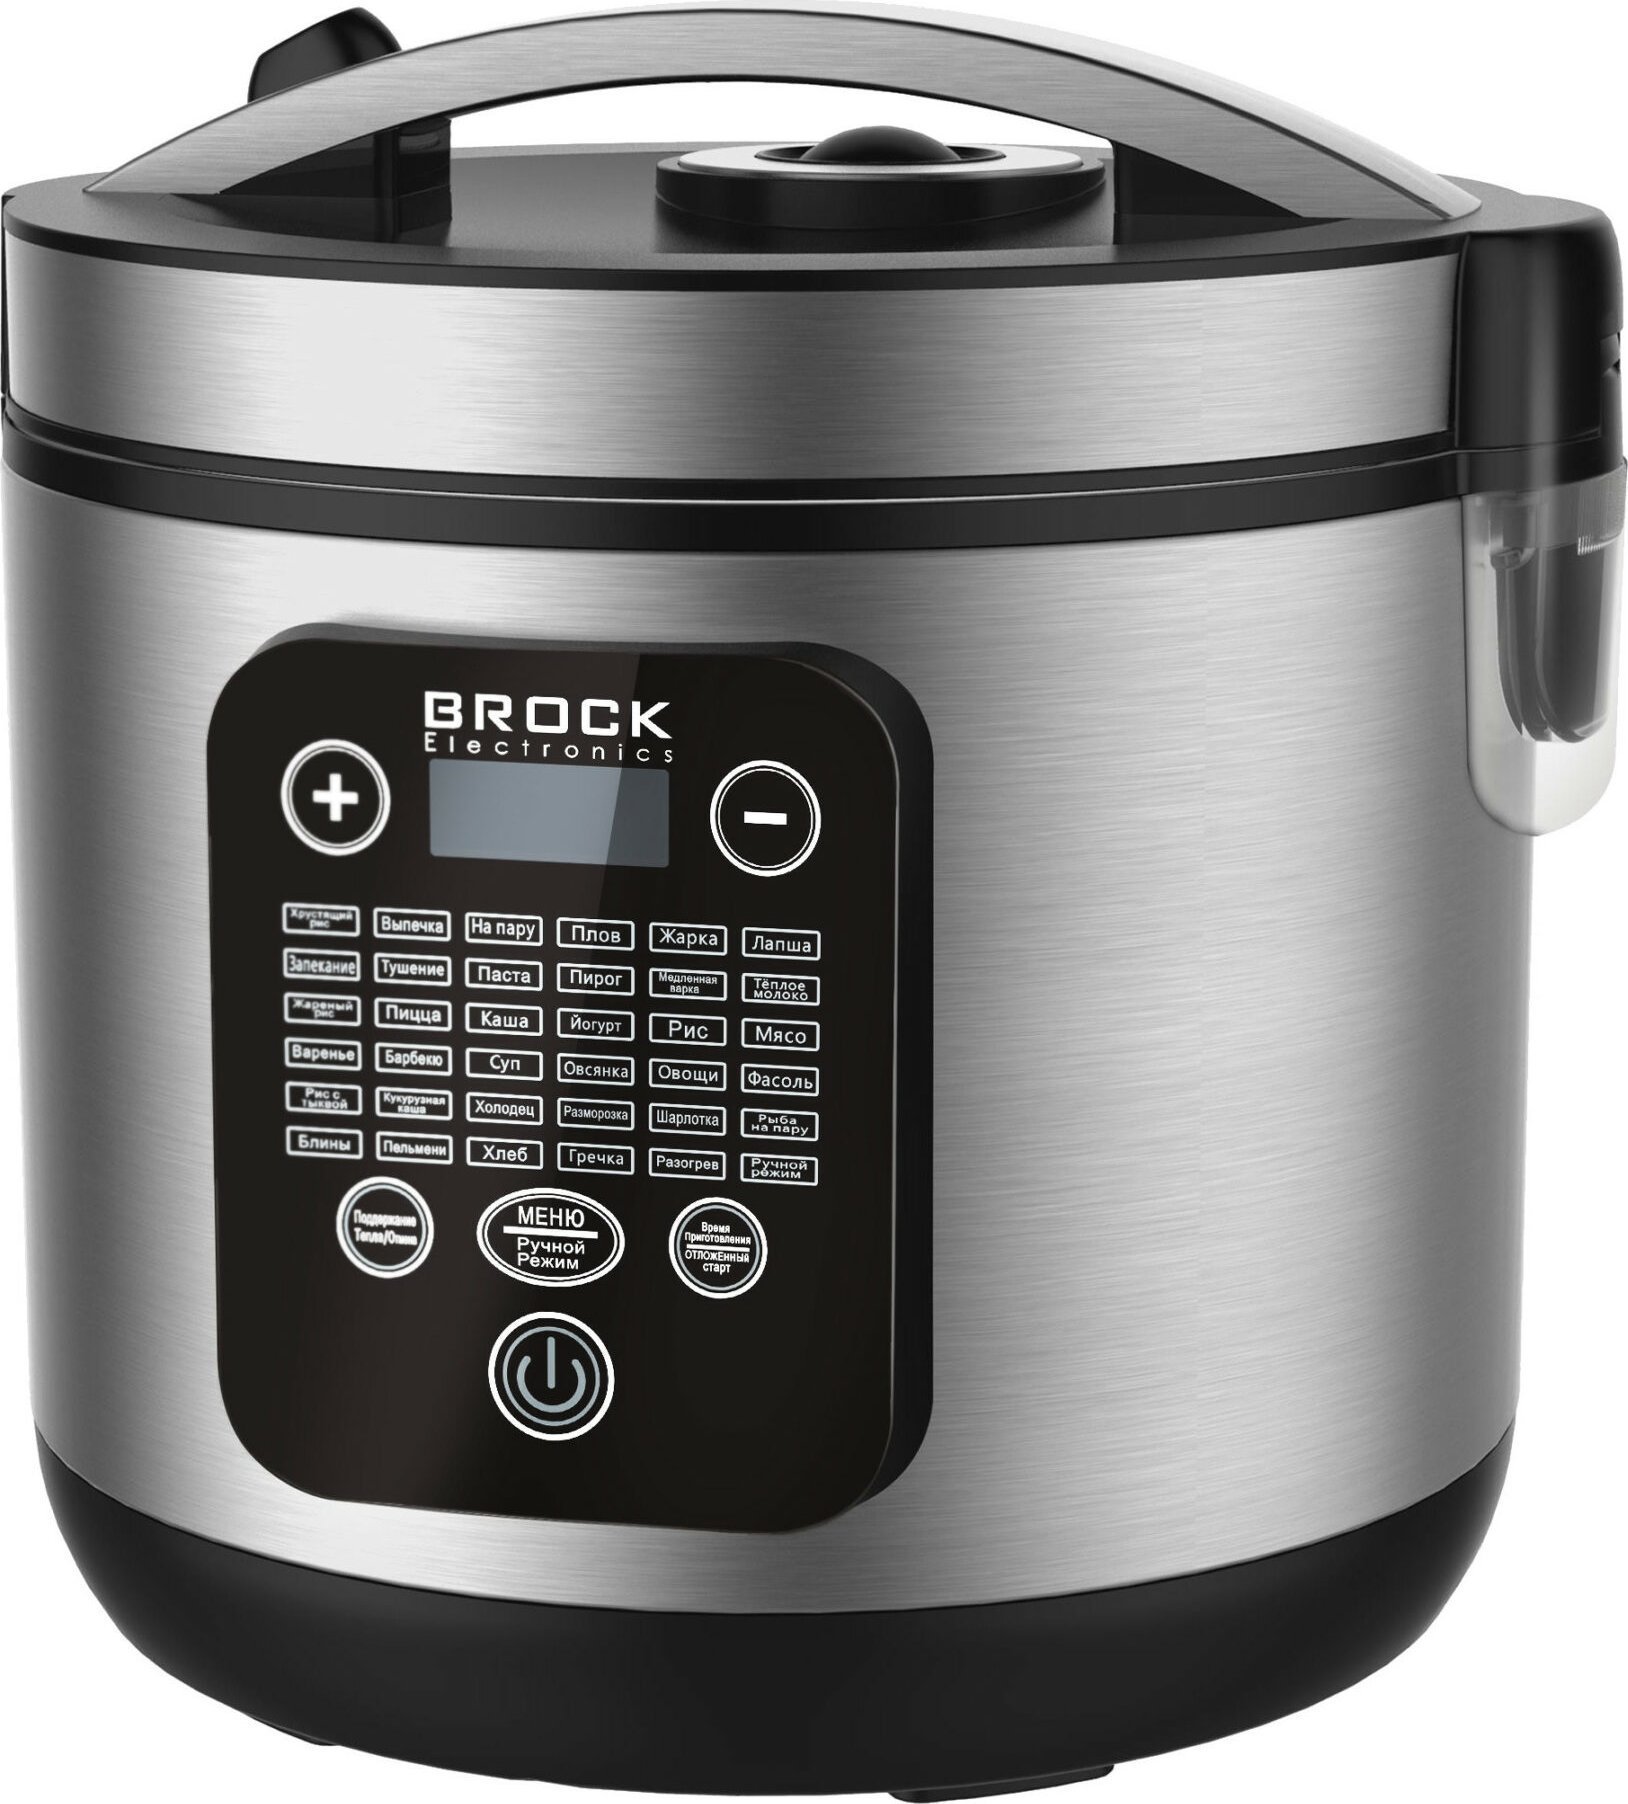 Multicooker - Brock MC 3601